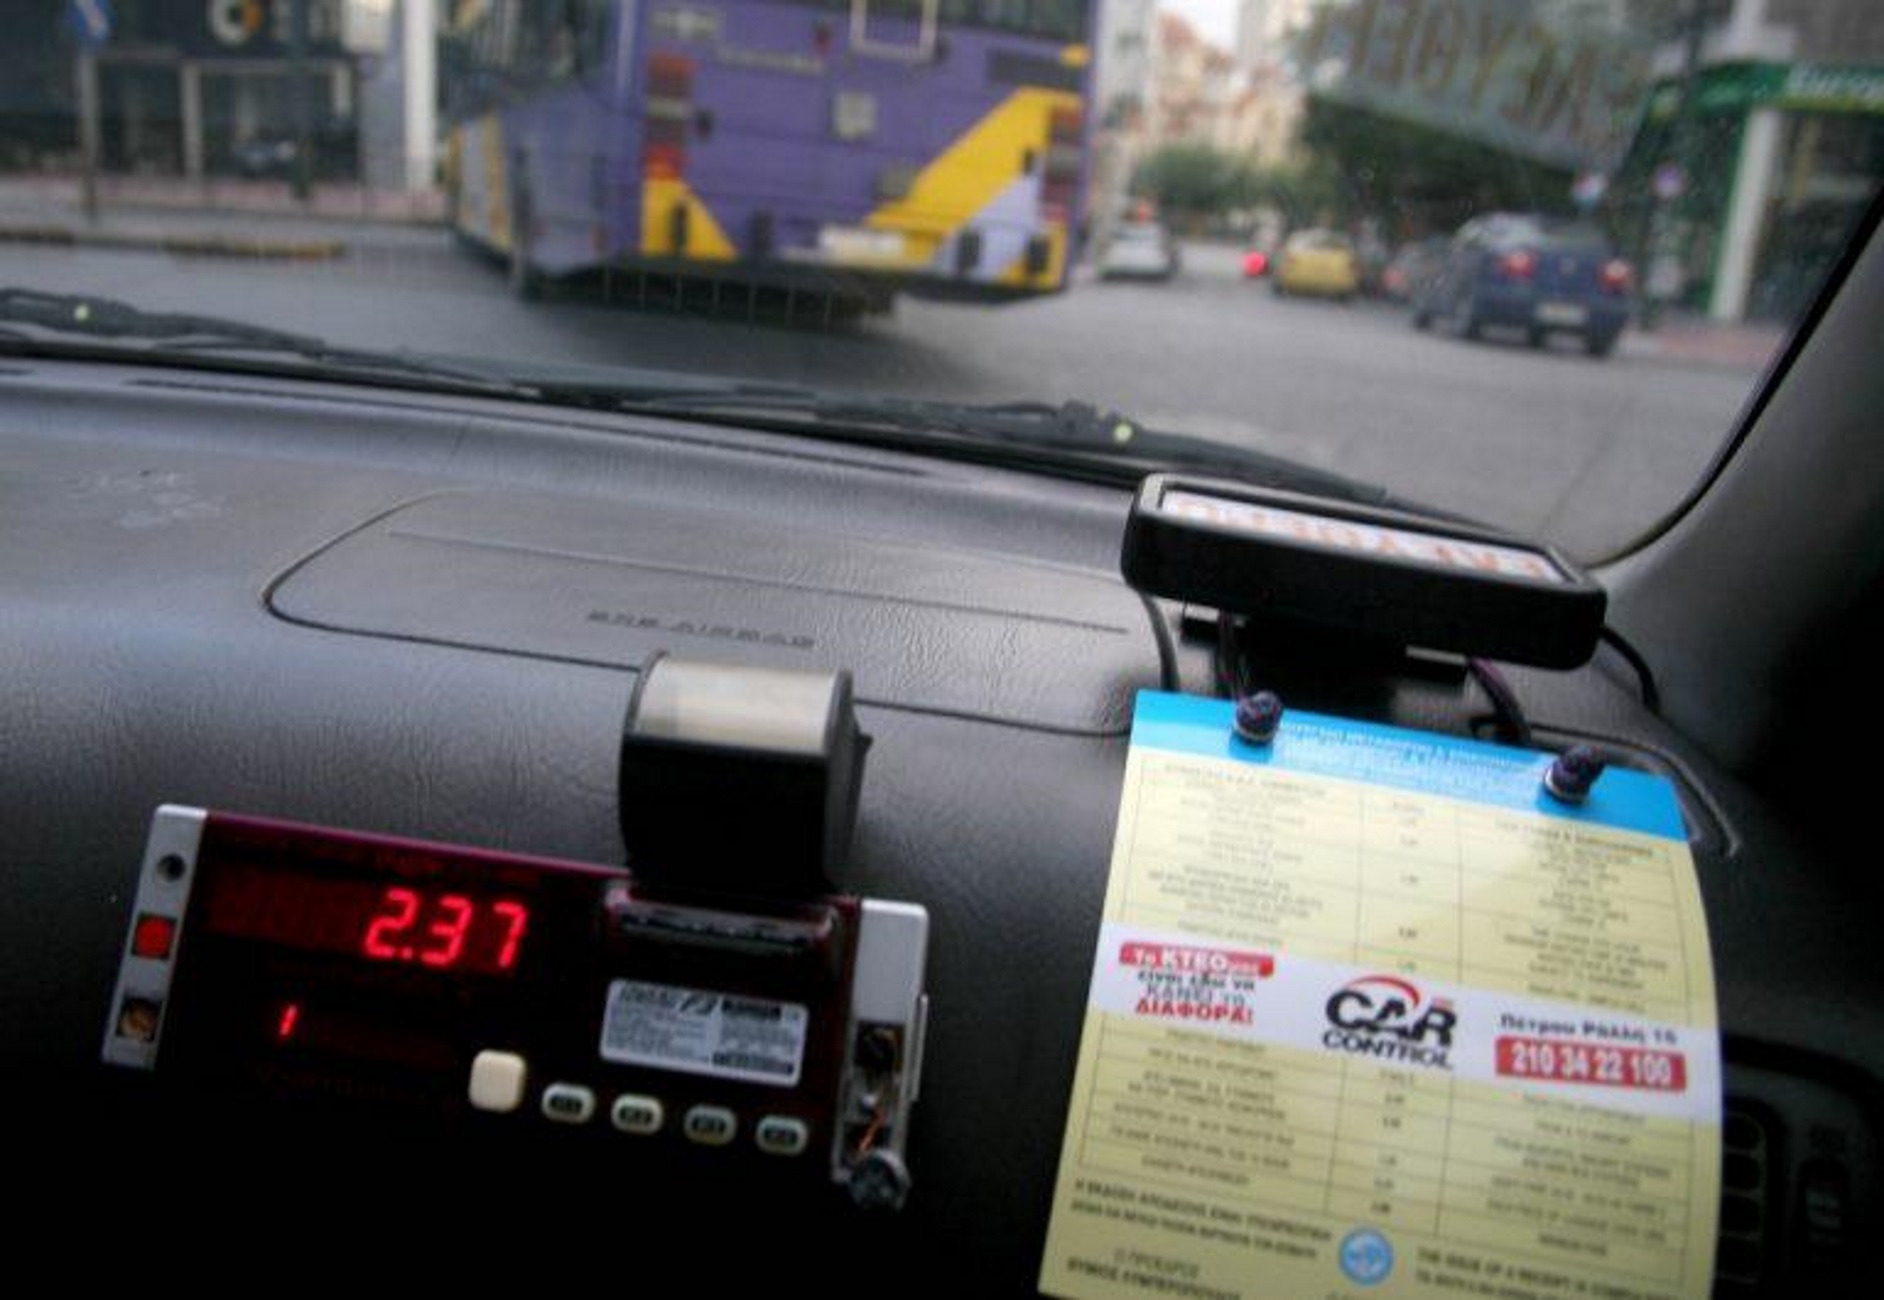 Θεσσαλονίκη: Η κούρσα που στοίχισε σε ταξιτζή 180 ευρώ – Κλοπή δίχως να καταλάβει το παραμικρό!